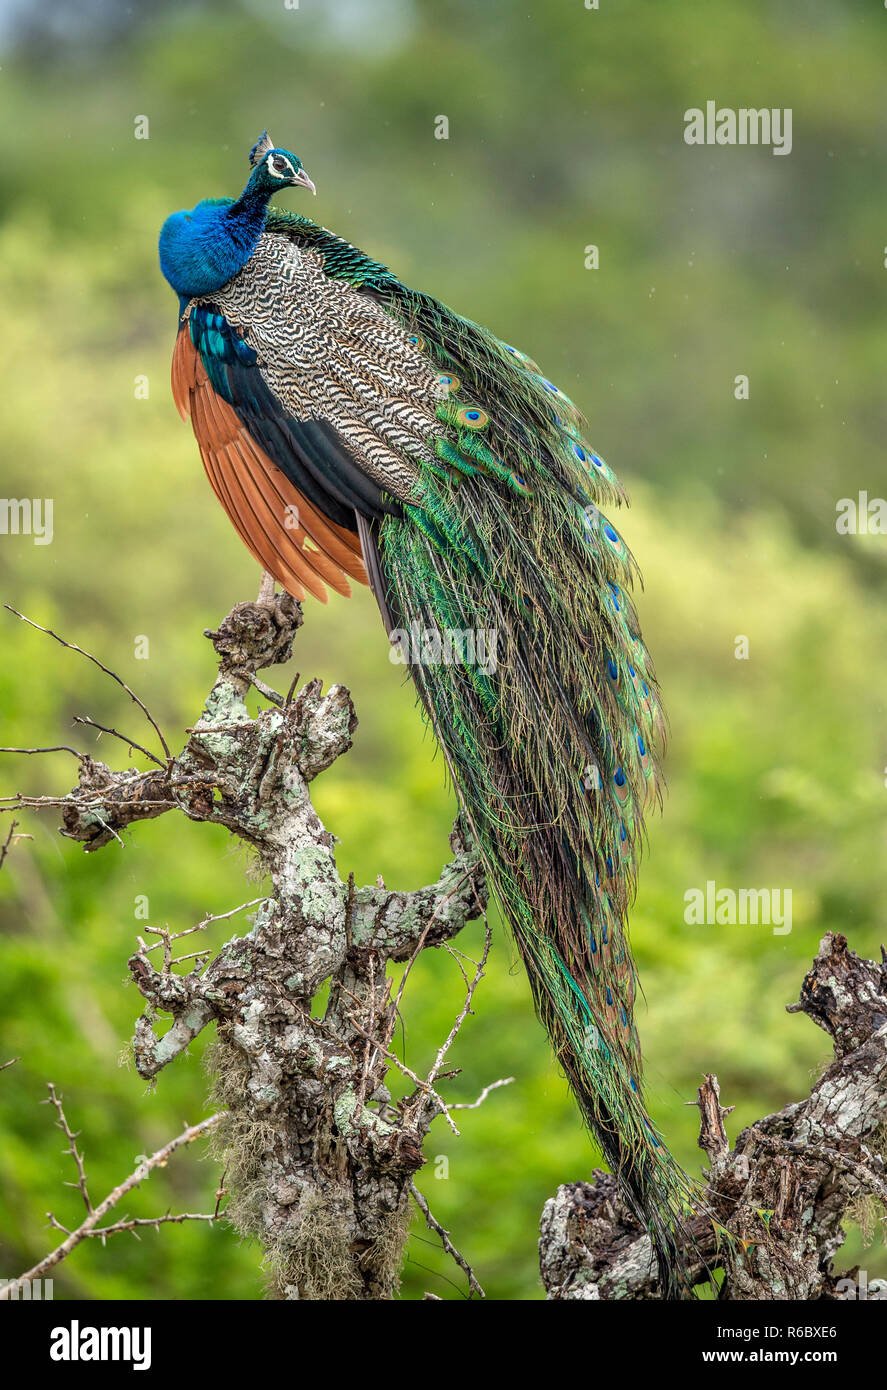 Peacock sull'albero. Ritratto di bella peacock. Il peafowl indiano o peafowl blu (Pavo cristatus). Habitat naturale. Il governo dello Sri Lanka. Foto Stock